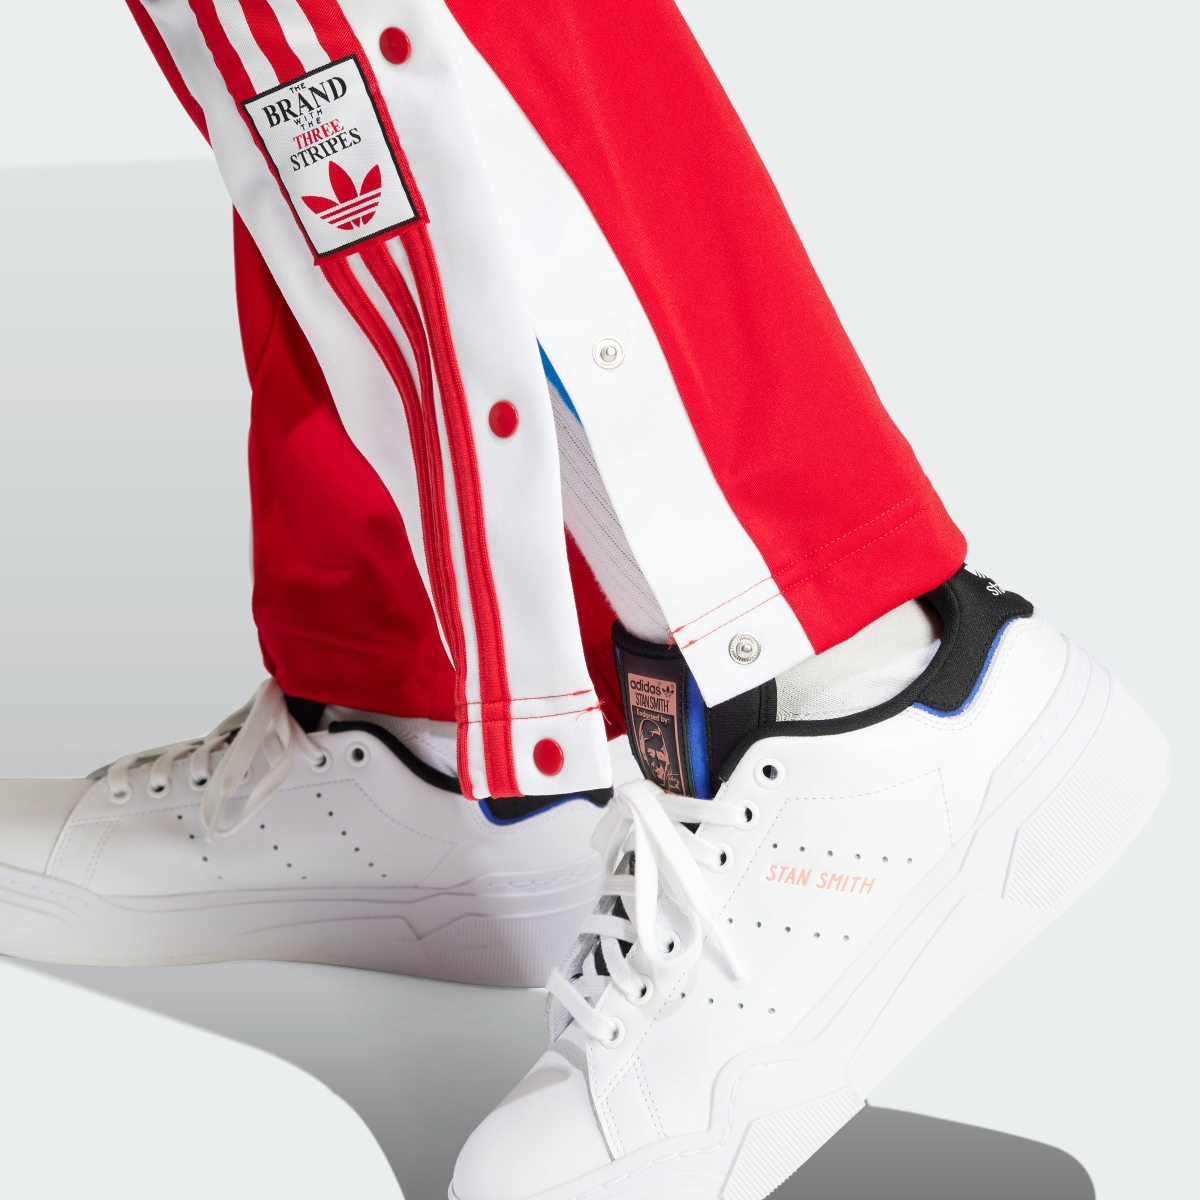 Adidas Spodnie Adibreak. 6